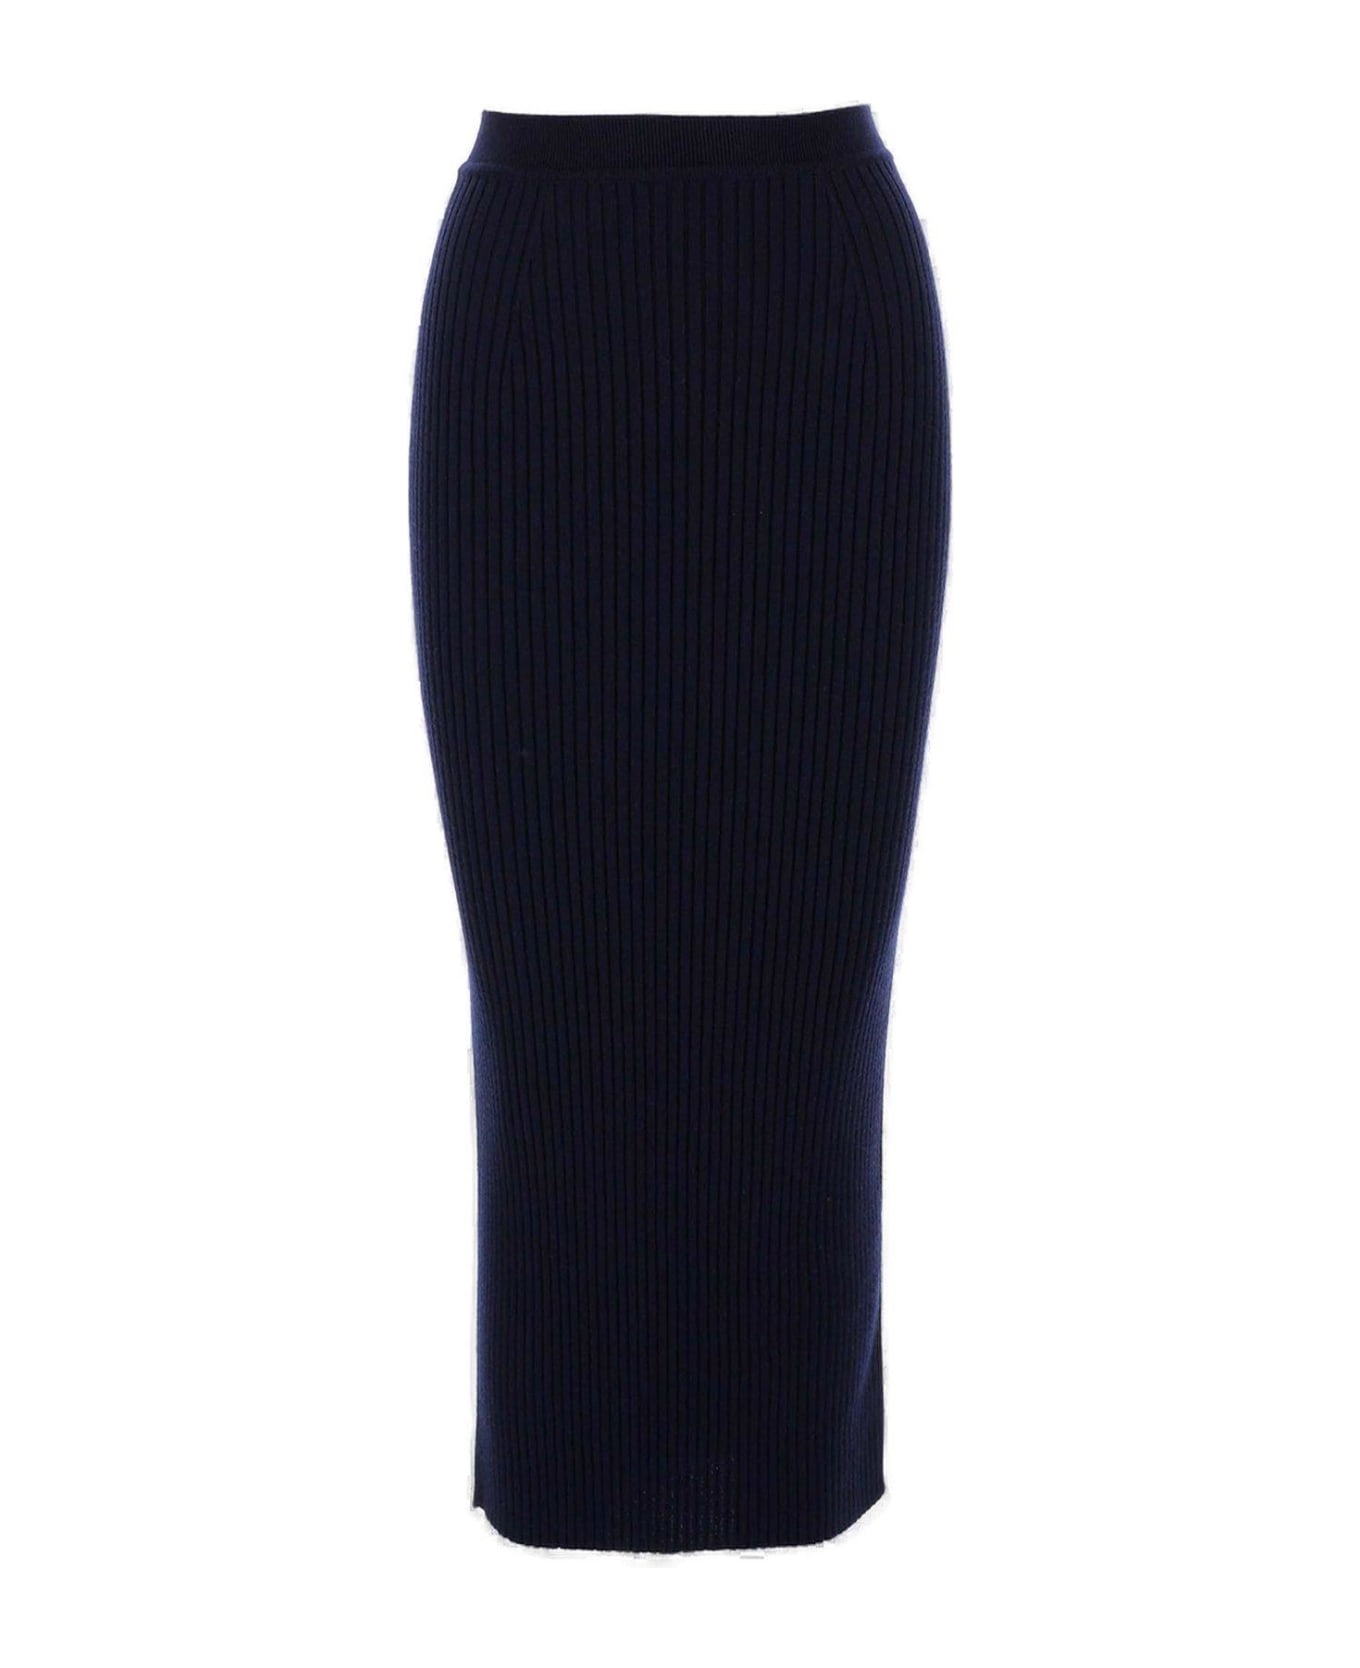 Chloé High-waisted Ribbed Pencil Skirt - Blue スカート